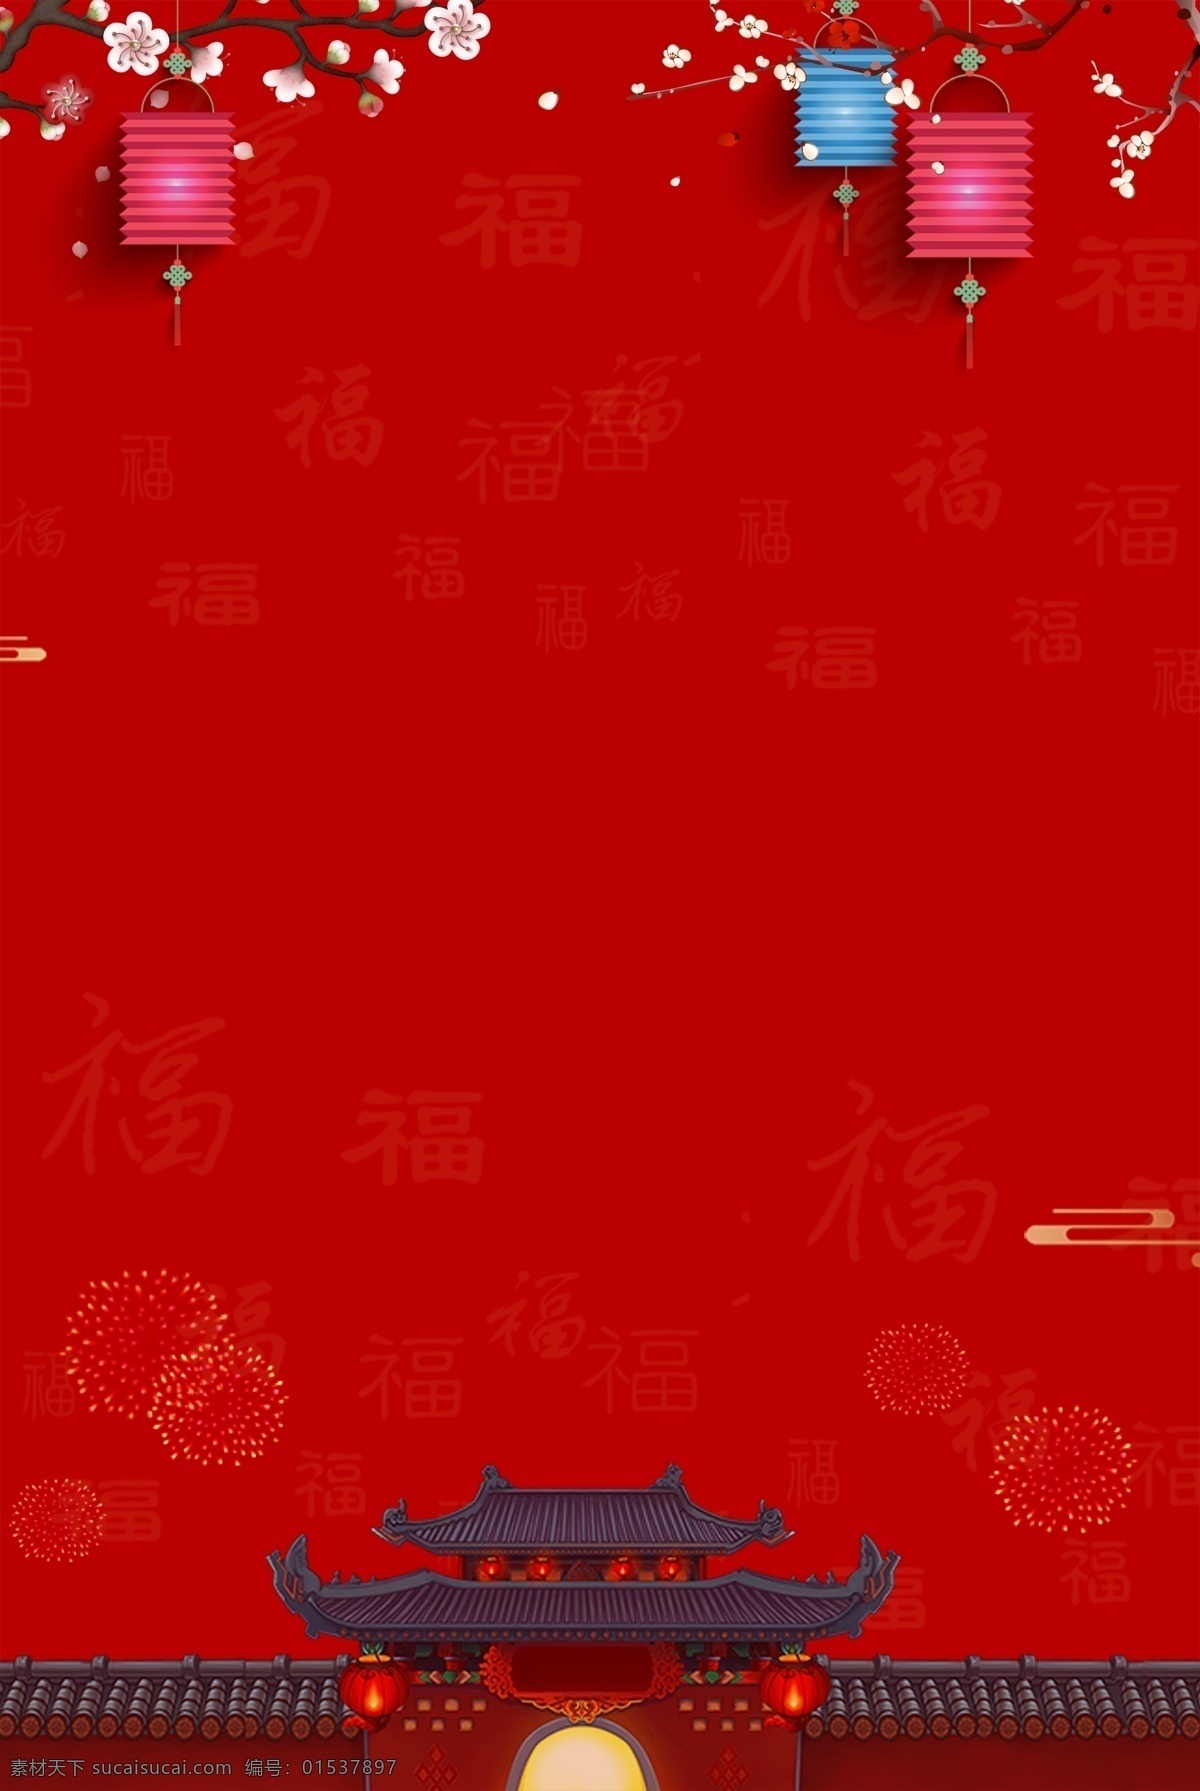 喜庆 海报 背景 背景展板 春节展板 红色背景 庆典背景 晚会背景 新年庆典展板 展会背景